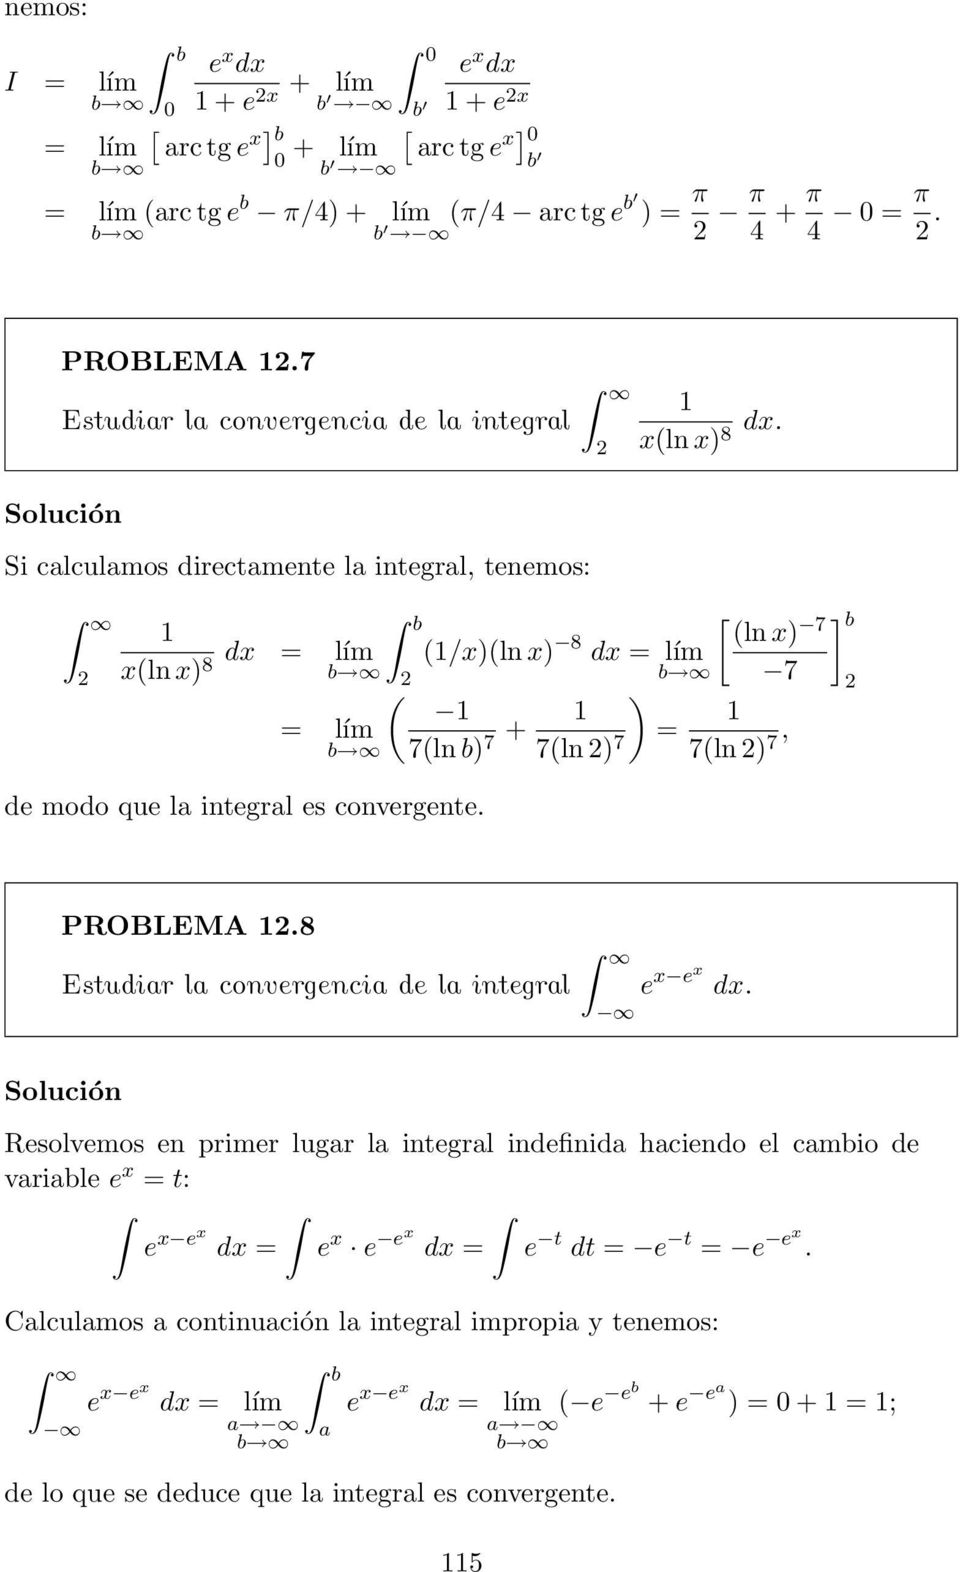 (ln ) (/)(ln ) 8 7 7 ( ) 7(ln b) 7 + 7(ln ) 7 = 7(ln ) 7, ] b PROBLEMA.8 Estudir l convergenci de l integrl e e.